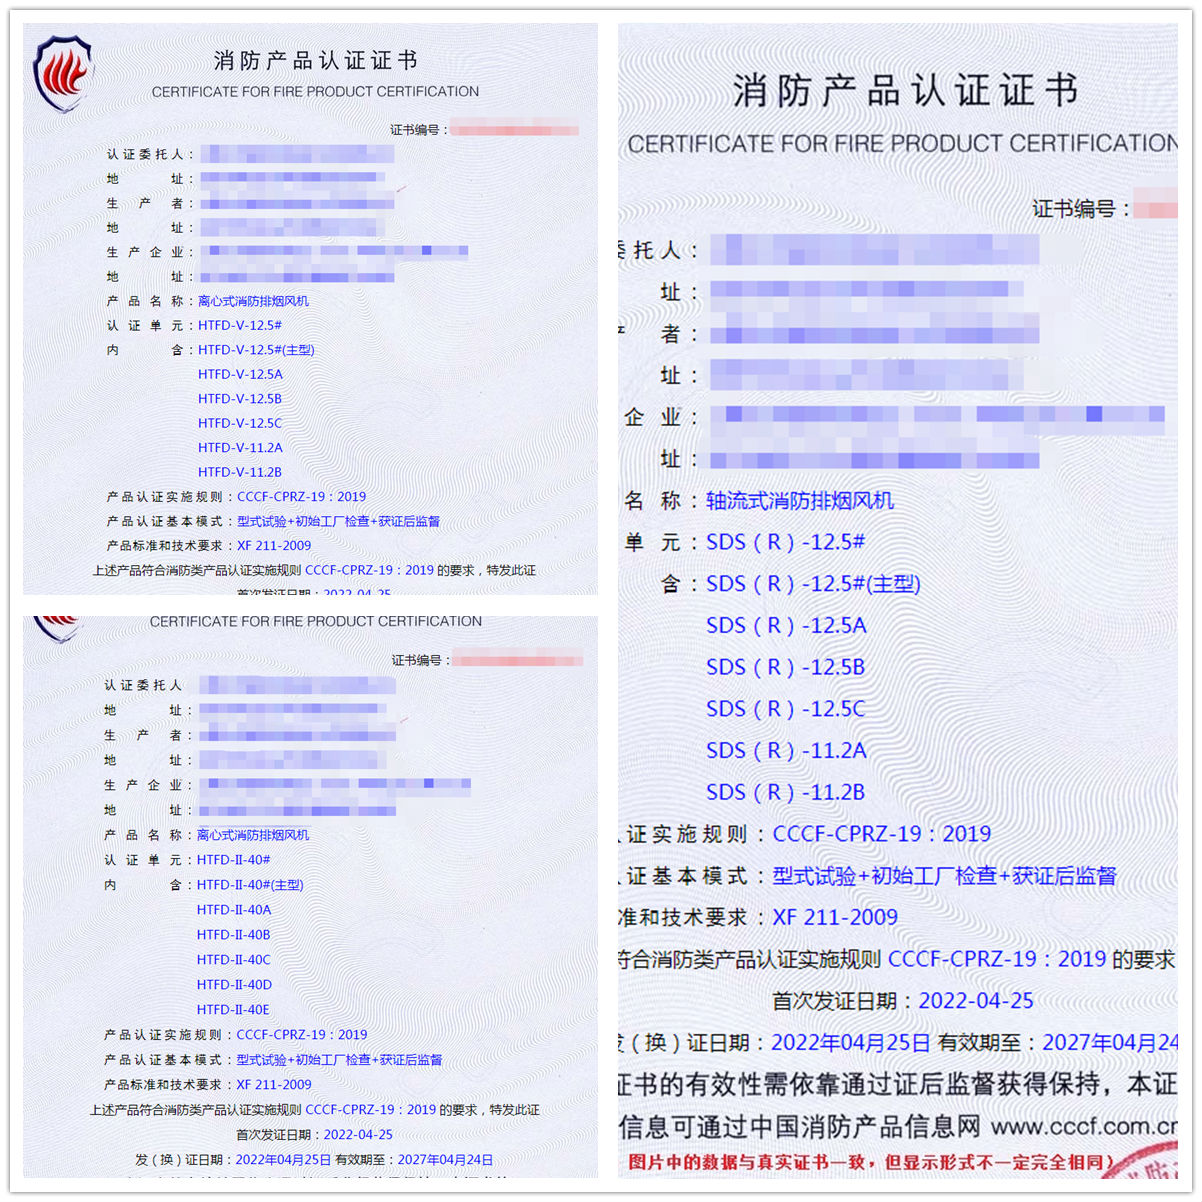 北京轴流式消防排烟风机、离心式消防排烟风机认证案例